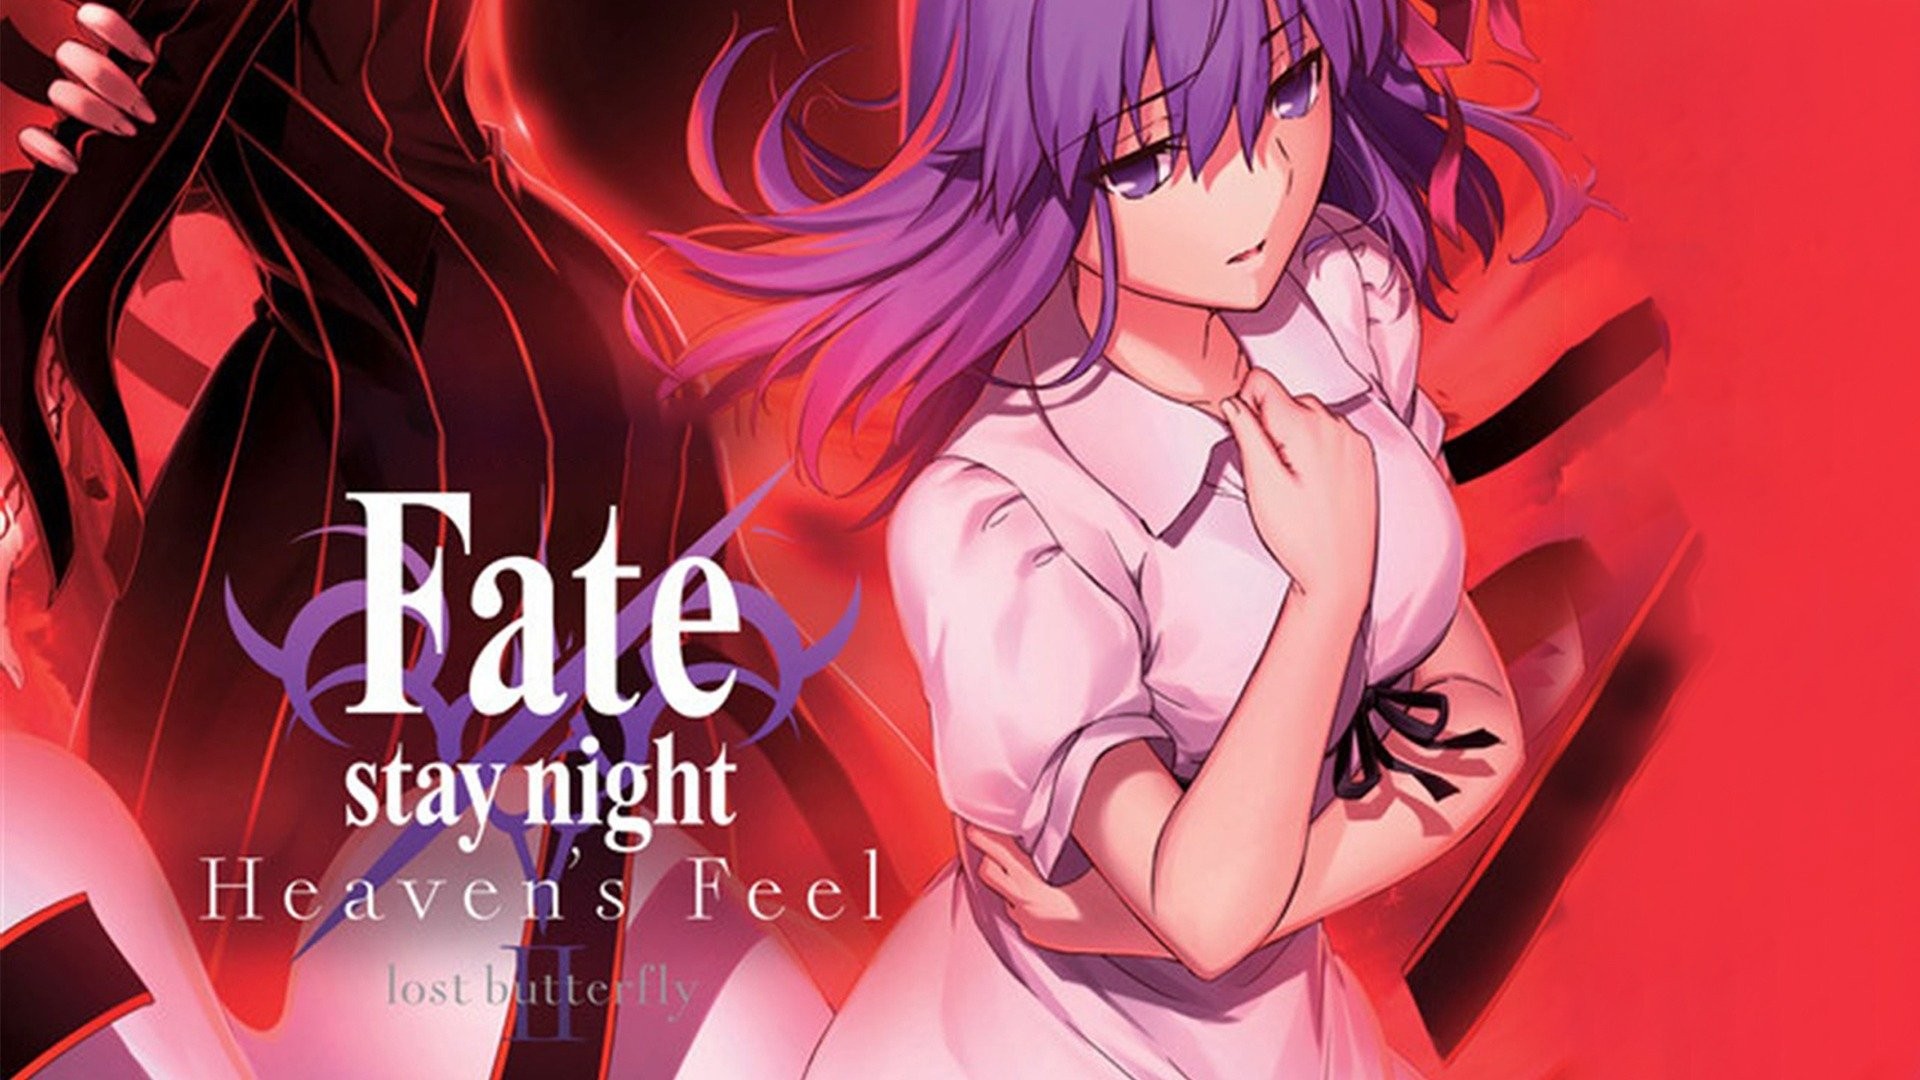 Fate/stay night: Heaven's Feel II. lost butterfly